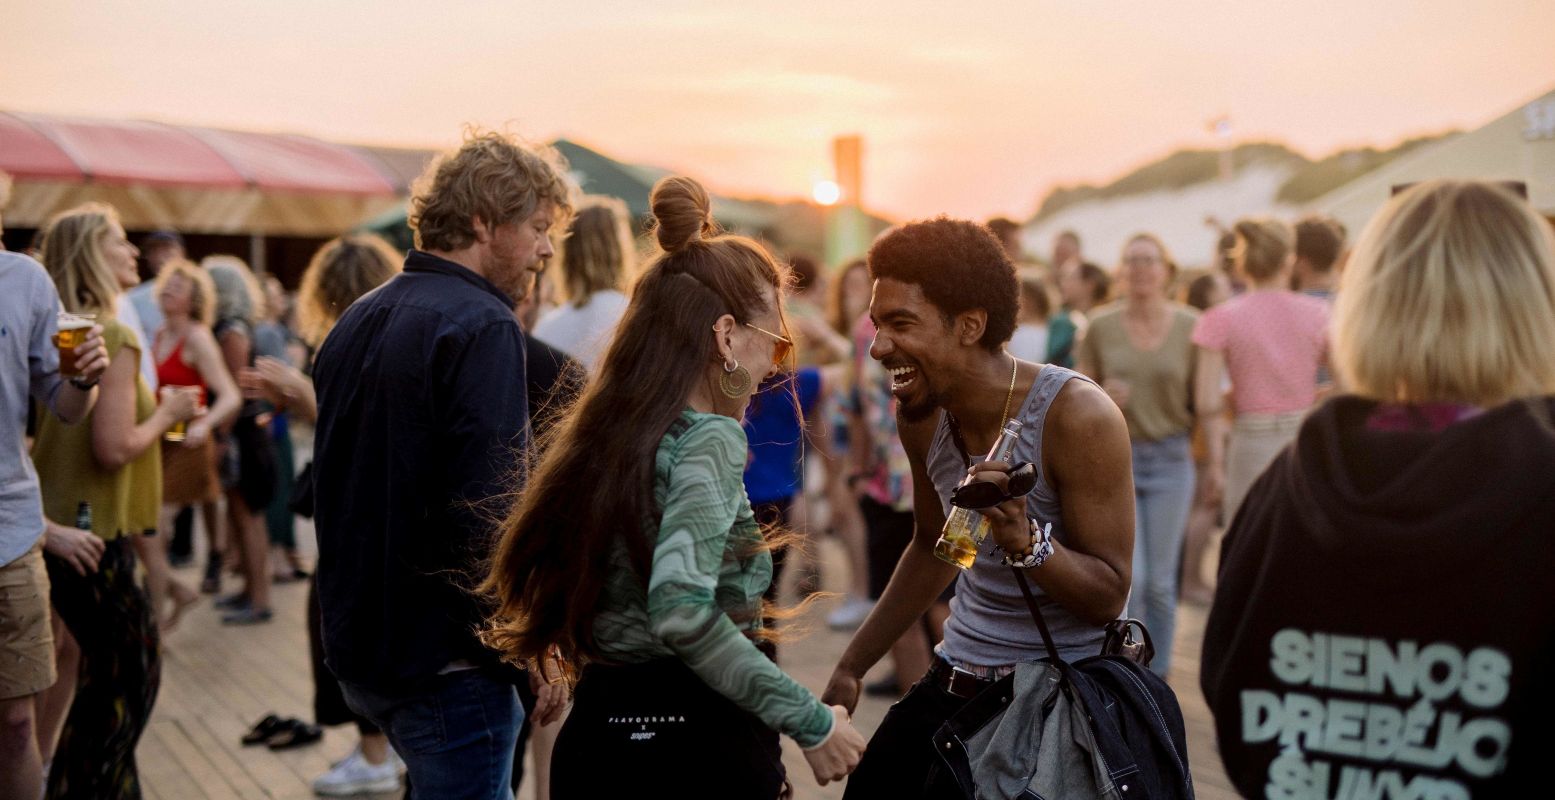 Dans, lach en geniet van dit unieke culturele festival! Foto: Oerol Festival